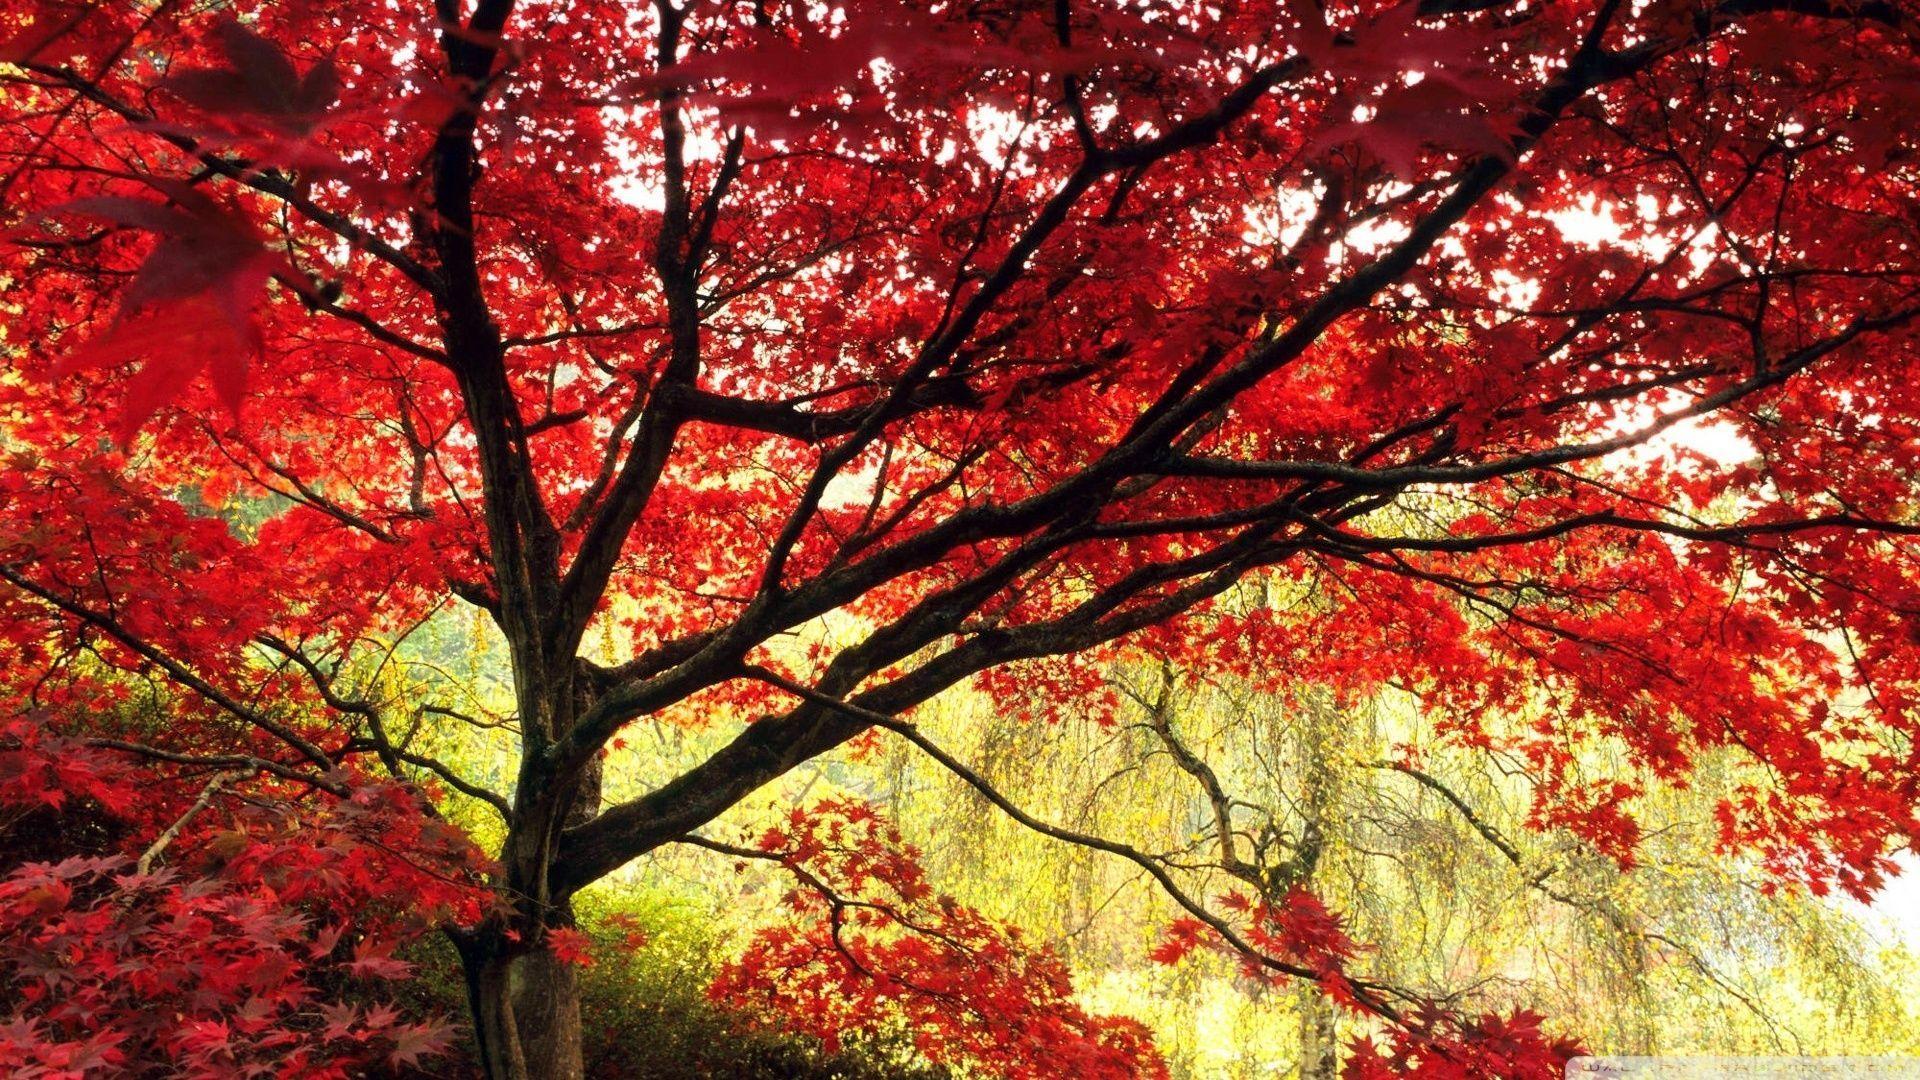 Thưởng thức hình ảnh đẹp như tranh vẽ của lá cây Nhật Bản - thước phim của thiên nhiên càng tôn lên vẻ đẹp tuyệt vời của chúng. Hãy chiêm ngưỡng thiên nhiên trong hoa và lá.